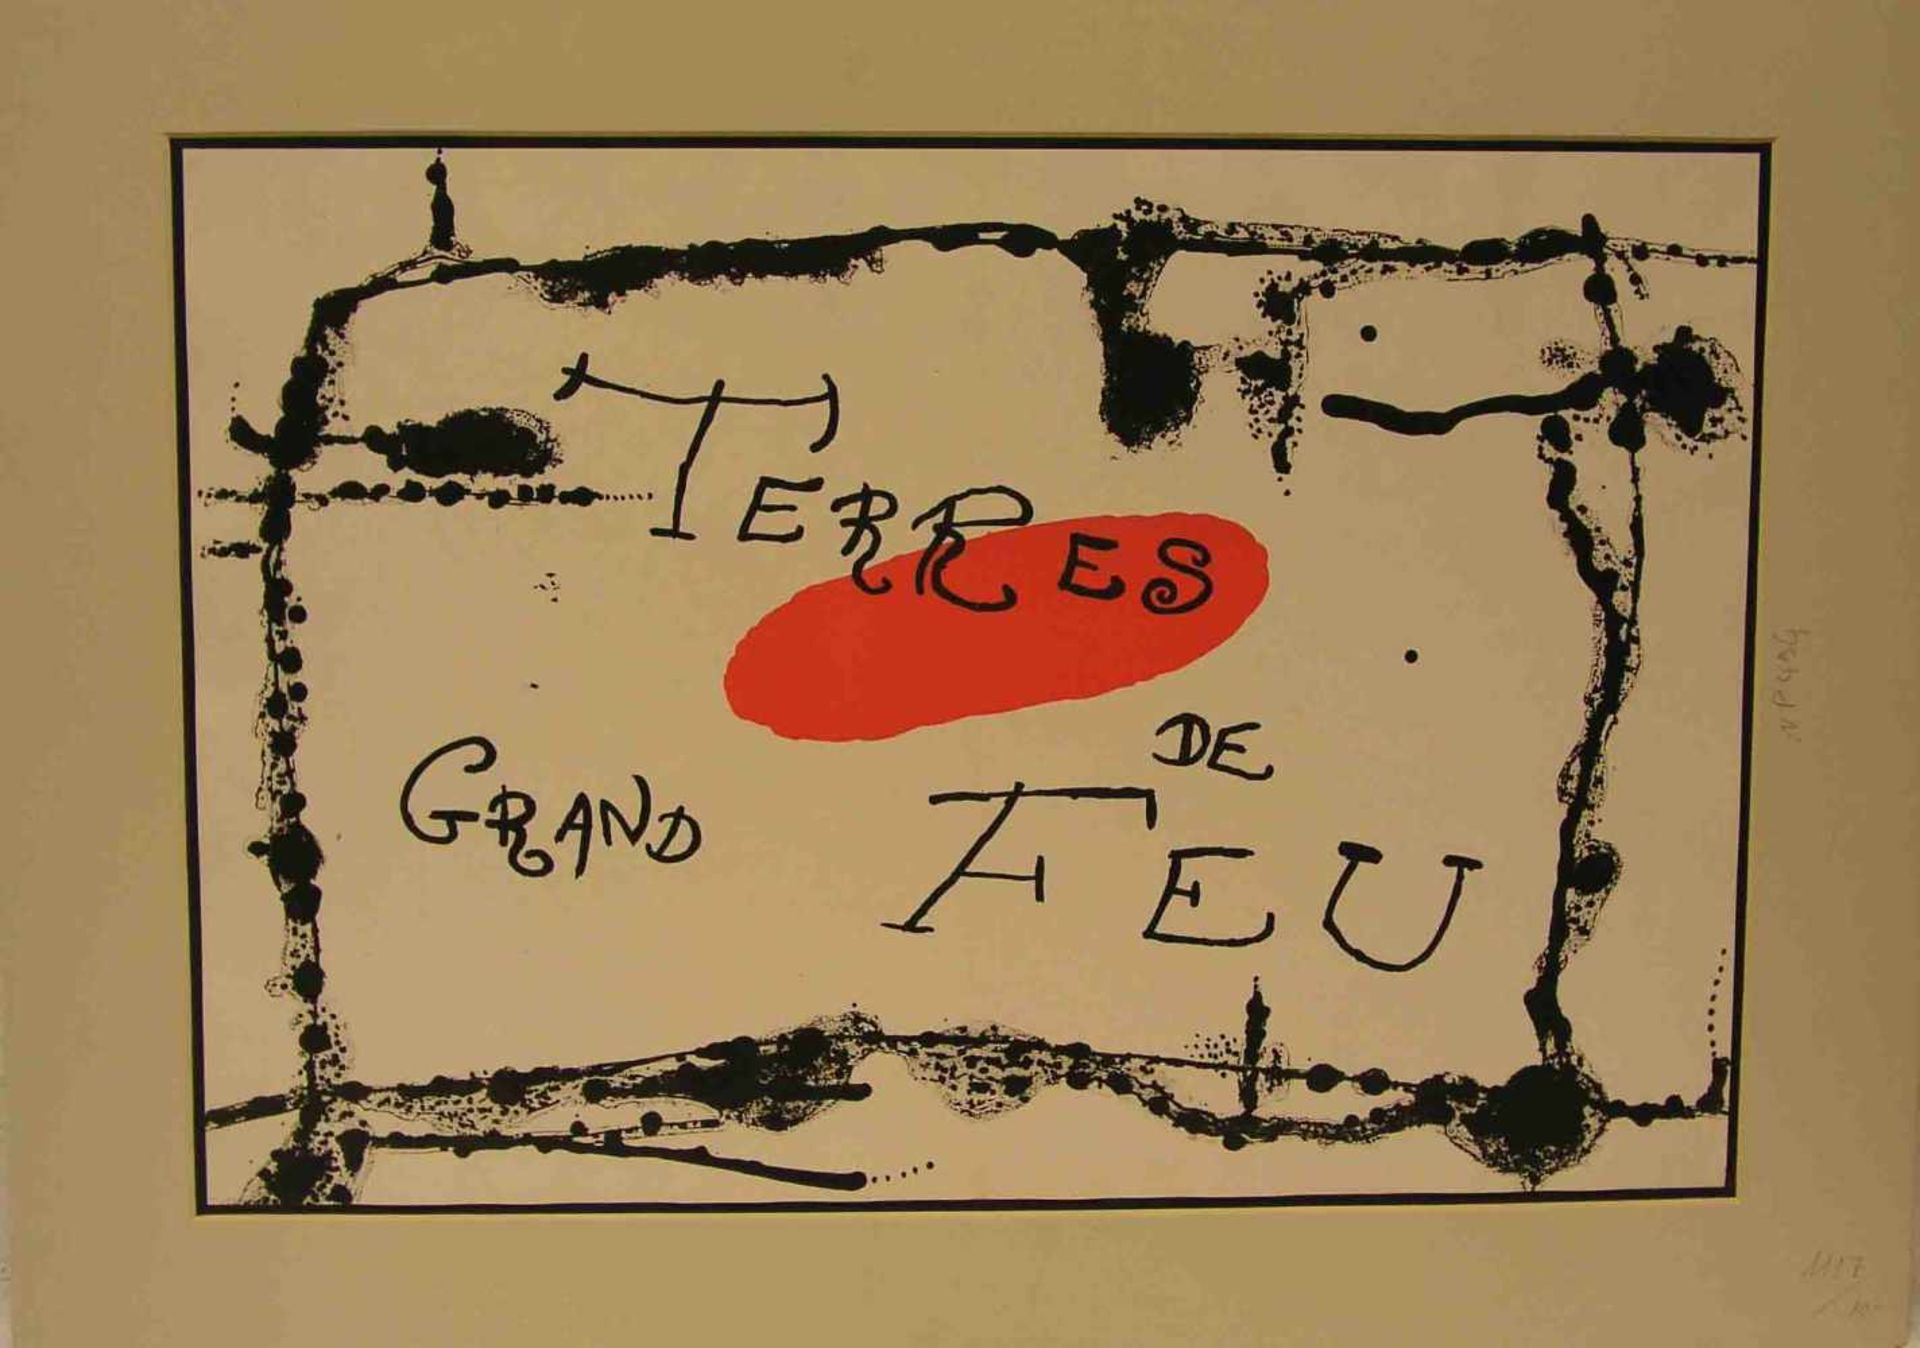 Miró, Joan (1893 - 1983): "Terres de grand feu". Farblithographie aus Derriere le miroir.<